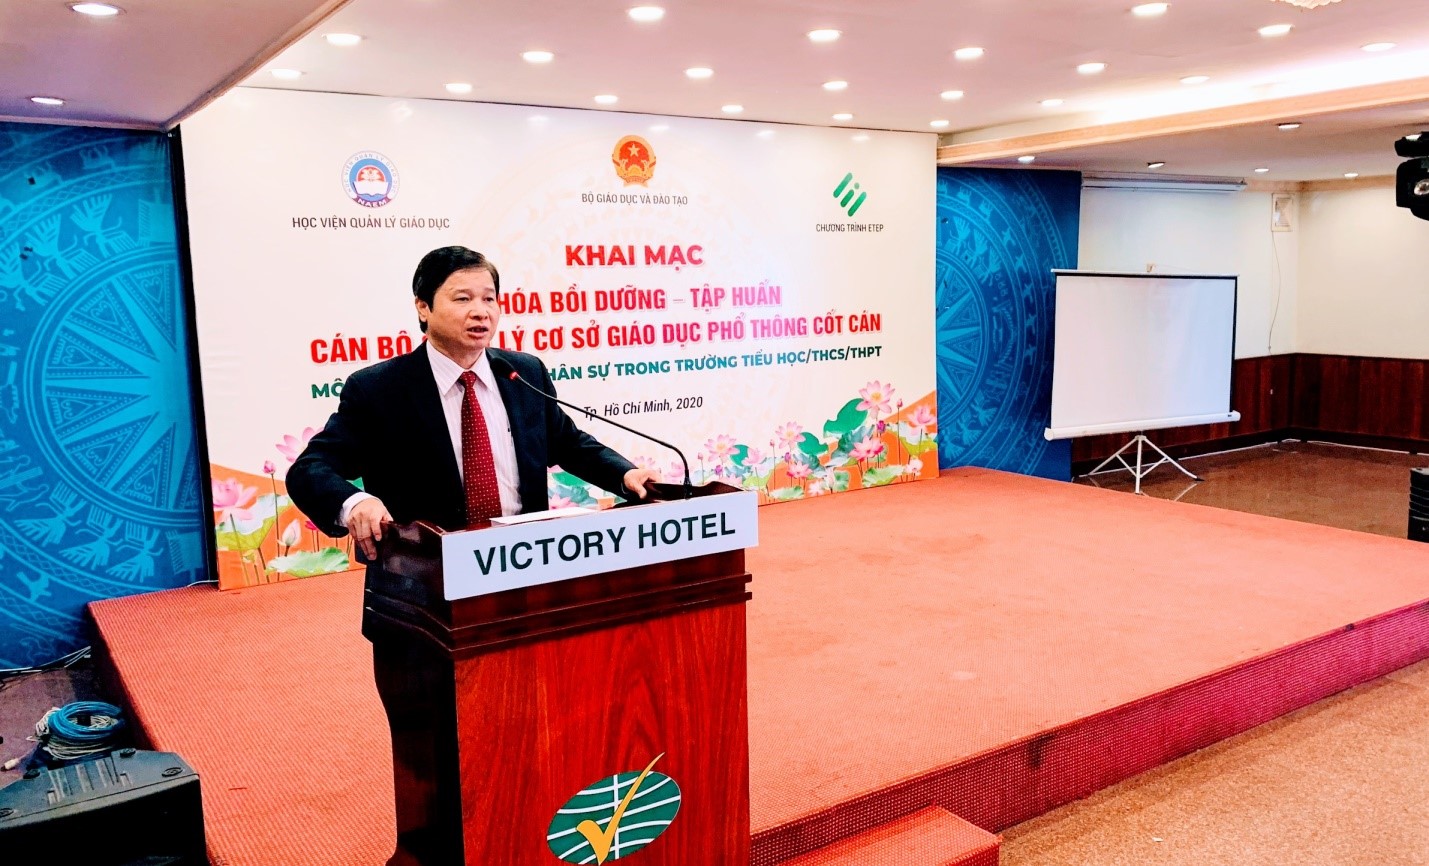 GS.TS Phạm Quang Trung, Giám đốc Học viện Quản lý giáo dục phát biểu khai mạc chương trình bồi dưỡng